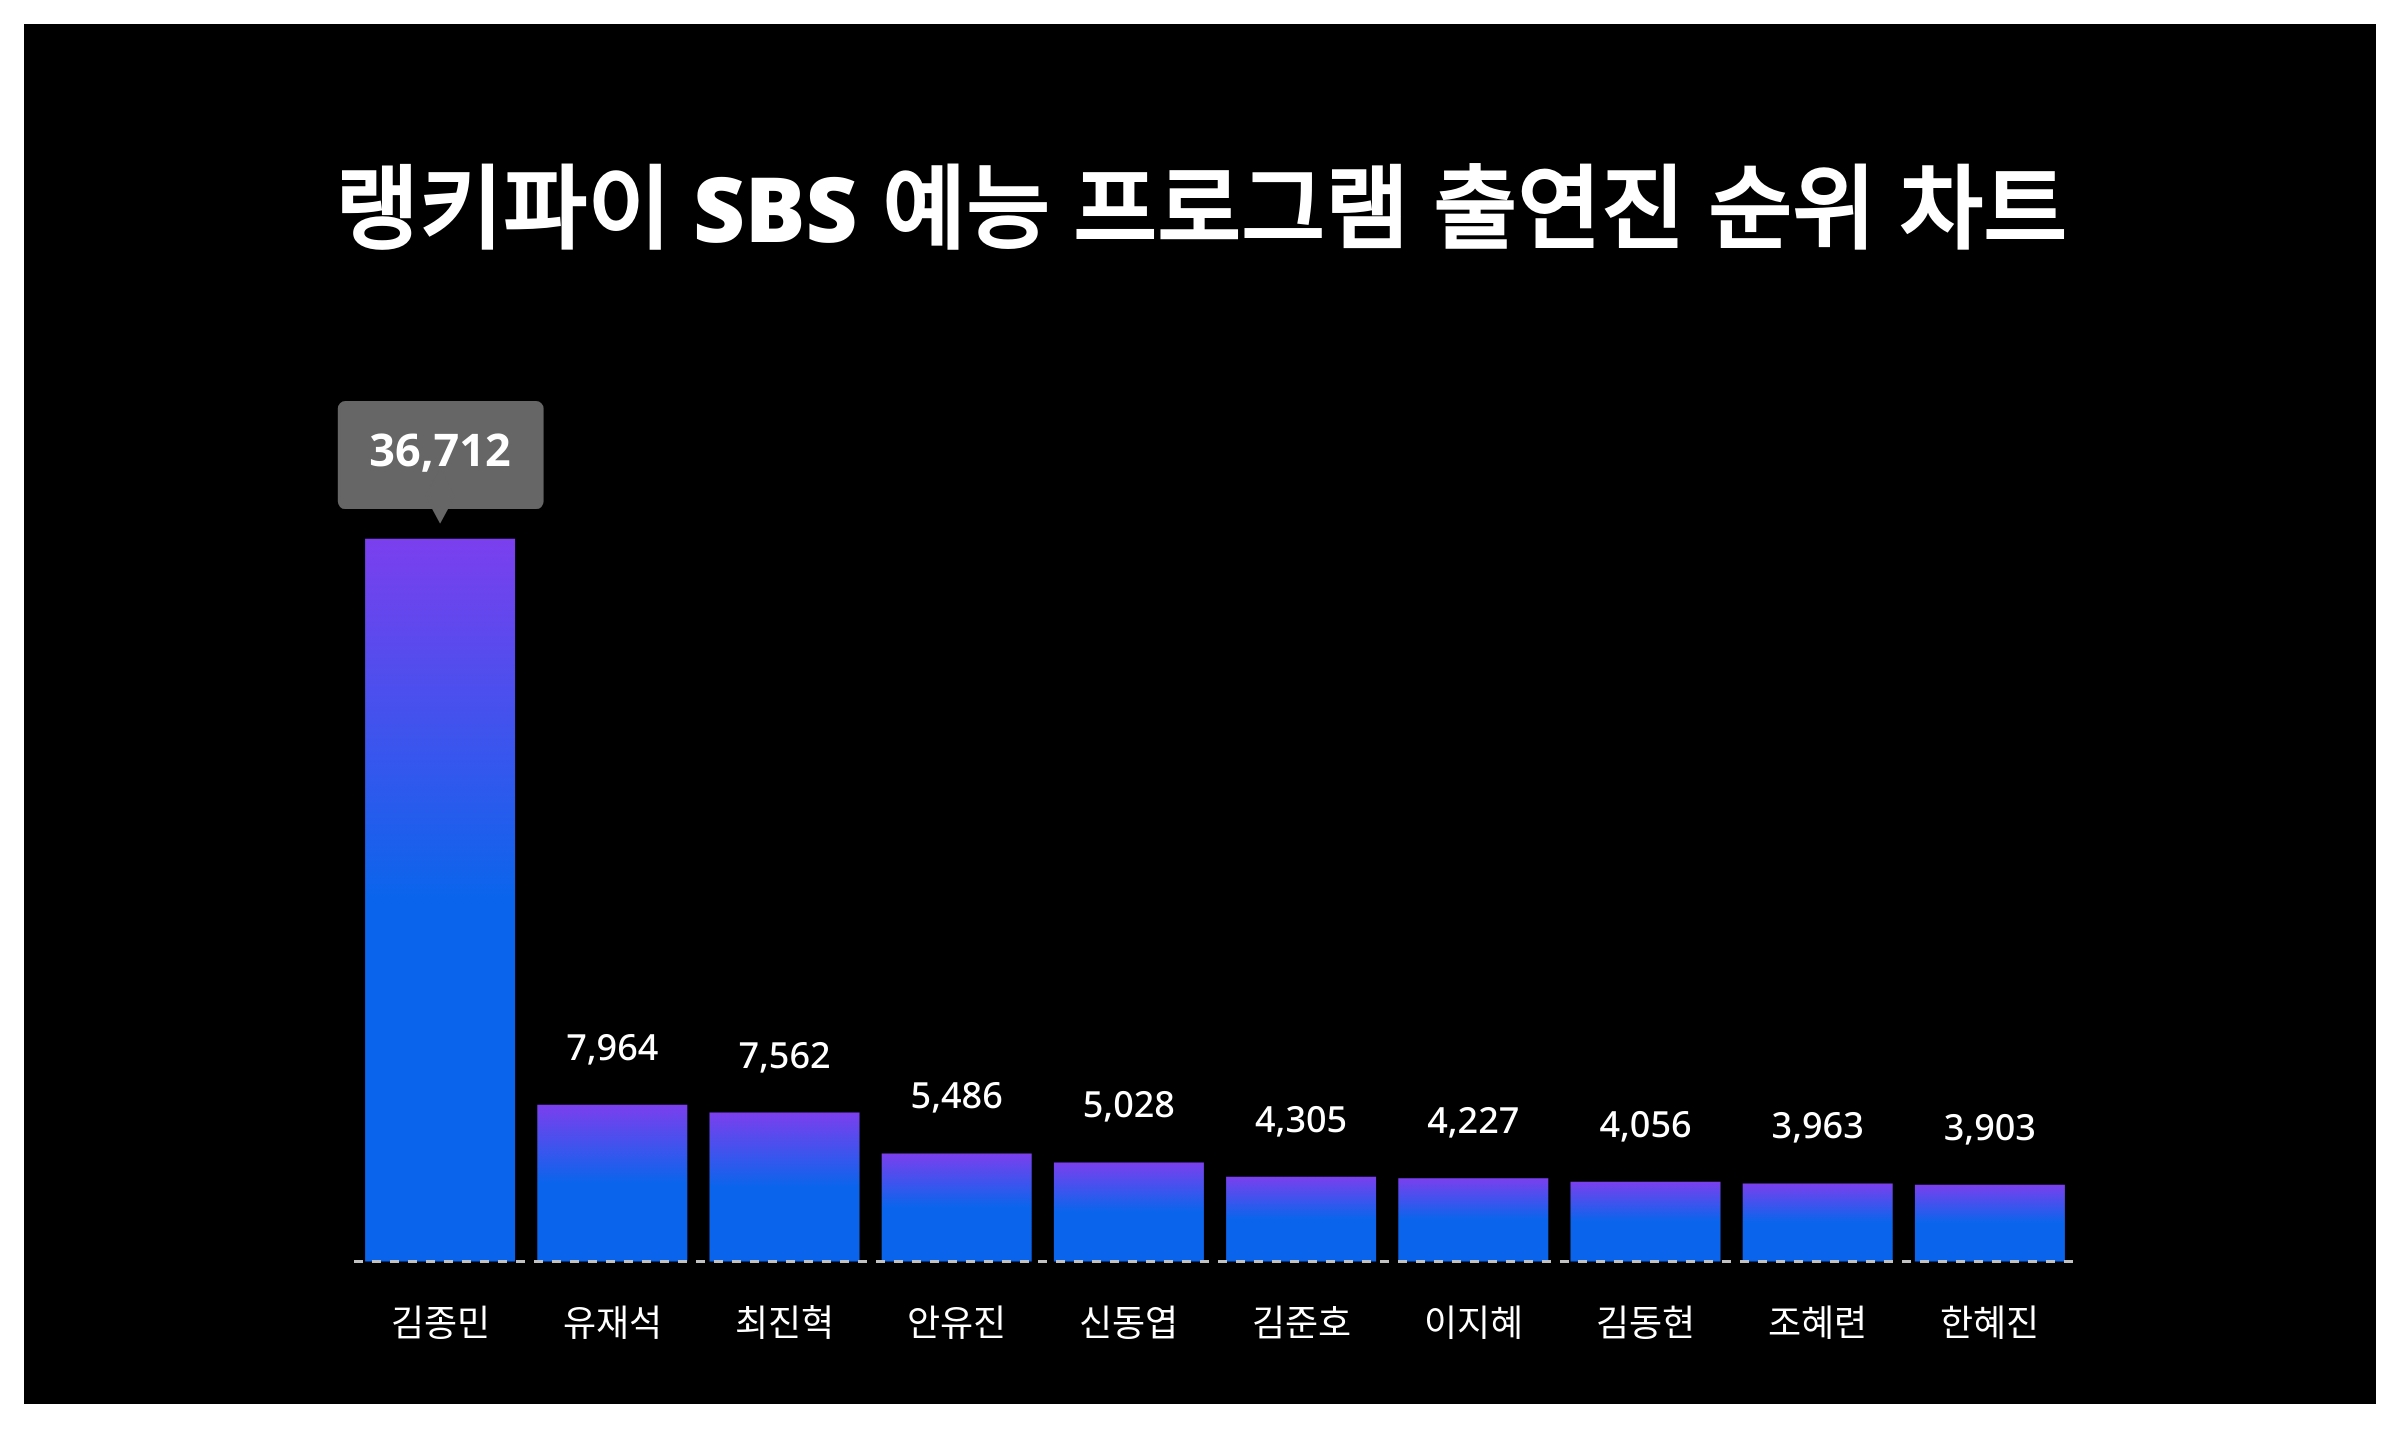 [출처: 랭키파이 SBS 예능 프로그램 출연진 트렌드 지수 분석 결과]